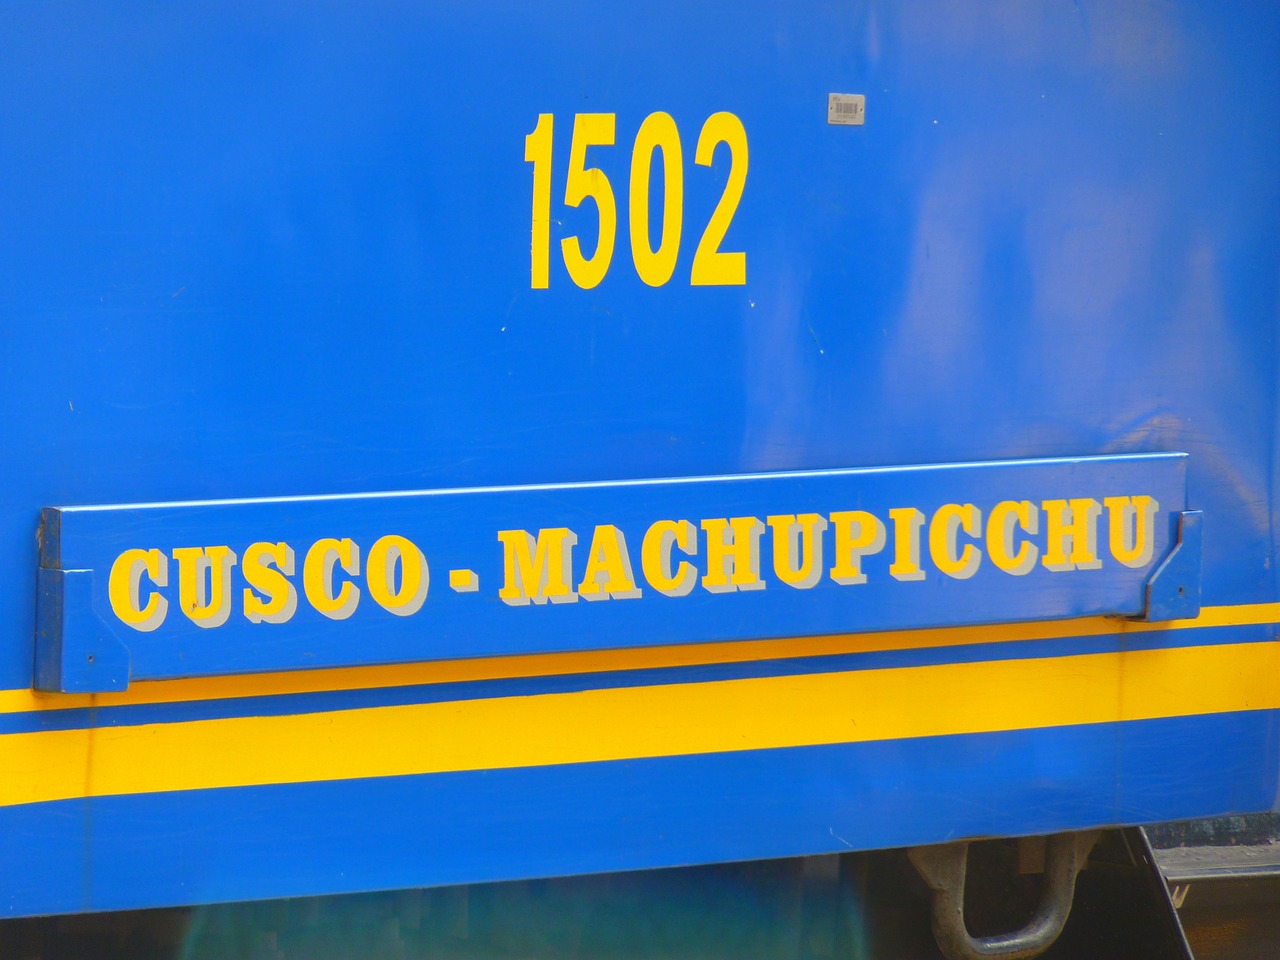 Traukinys, Traukinių Stotis, Platforma, Geležinkelio Bilietai, Antrasis Geležinkelis, Perurailis, Peru, Cusco, Maču Pikču, Maču Pikču